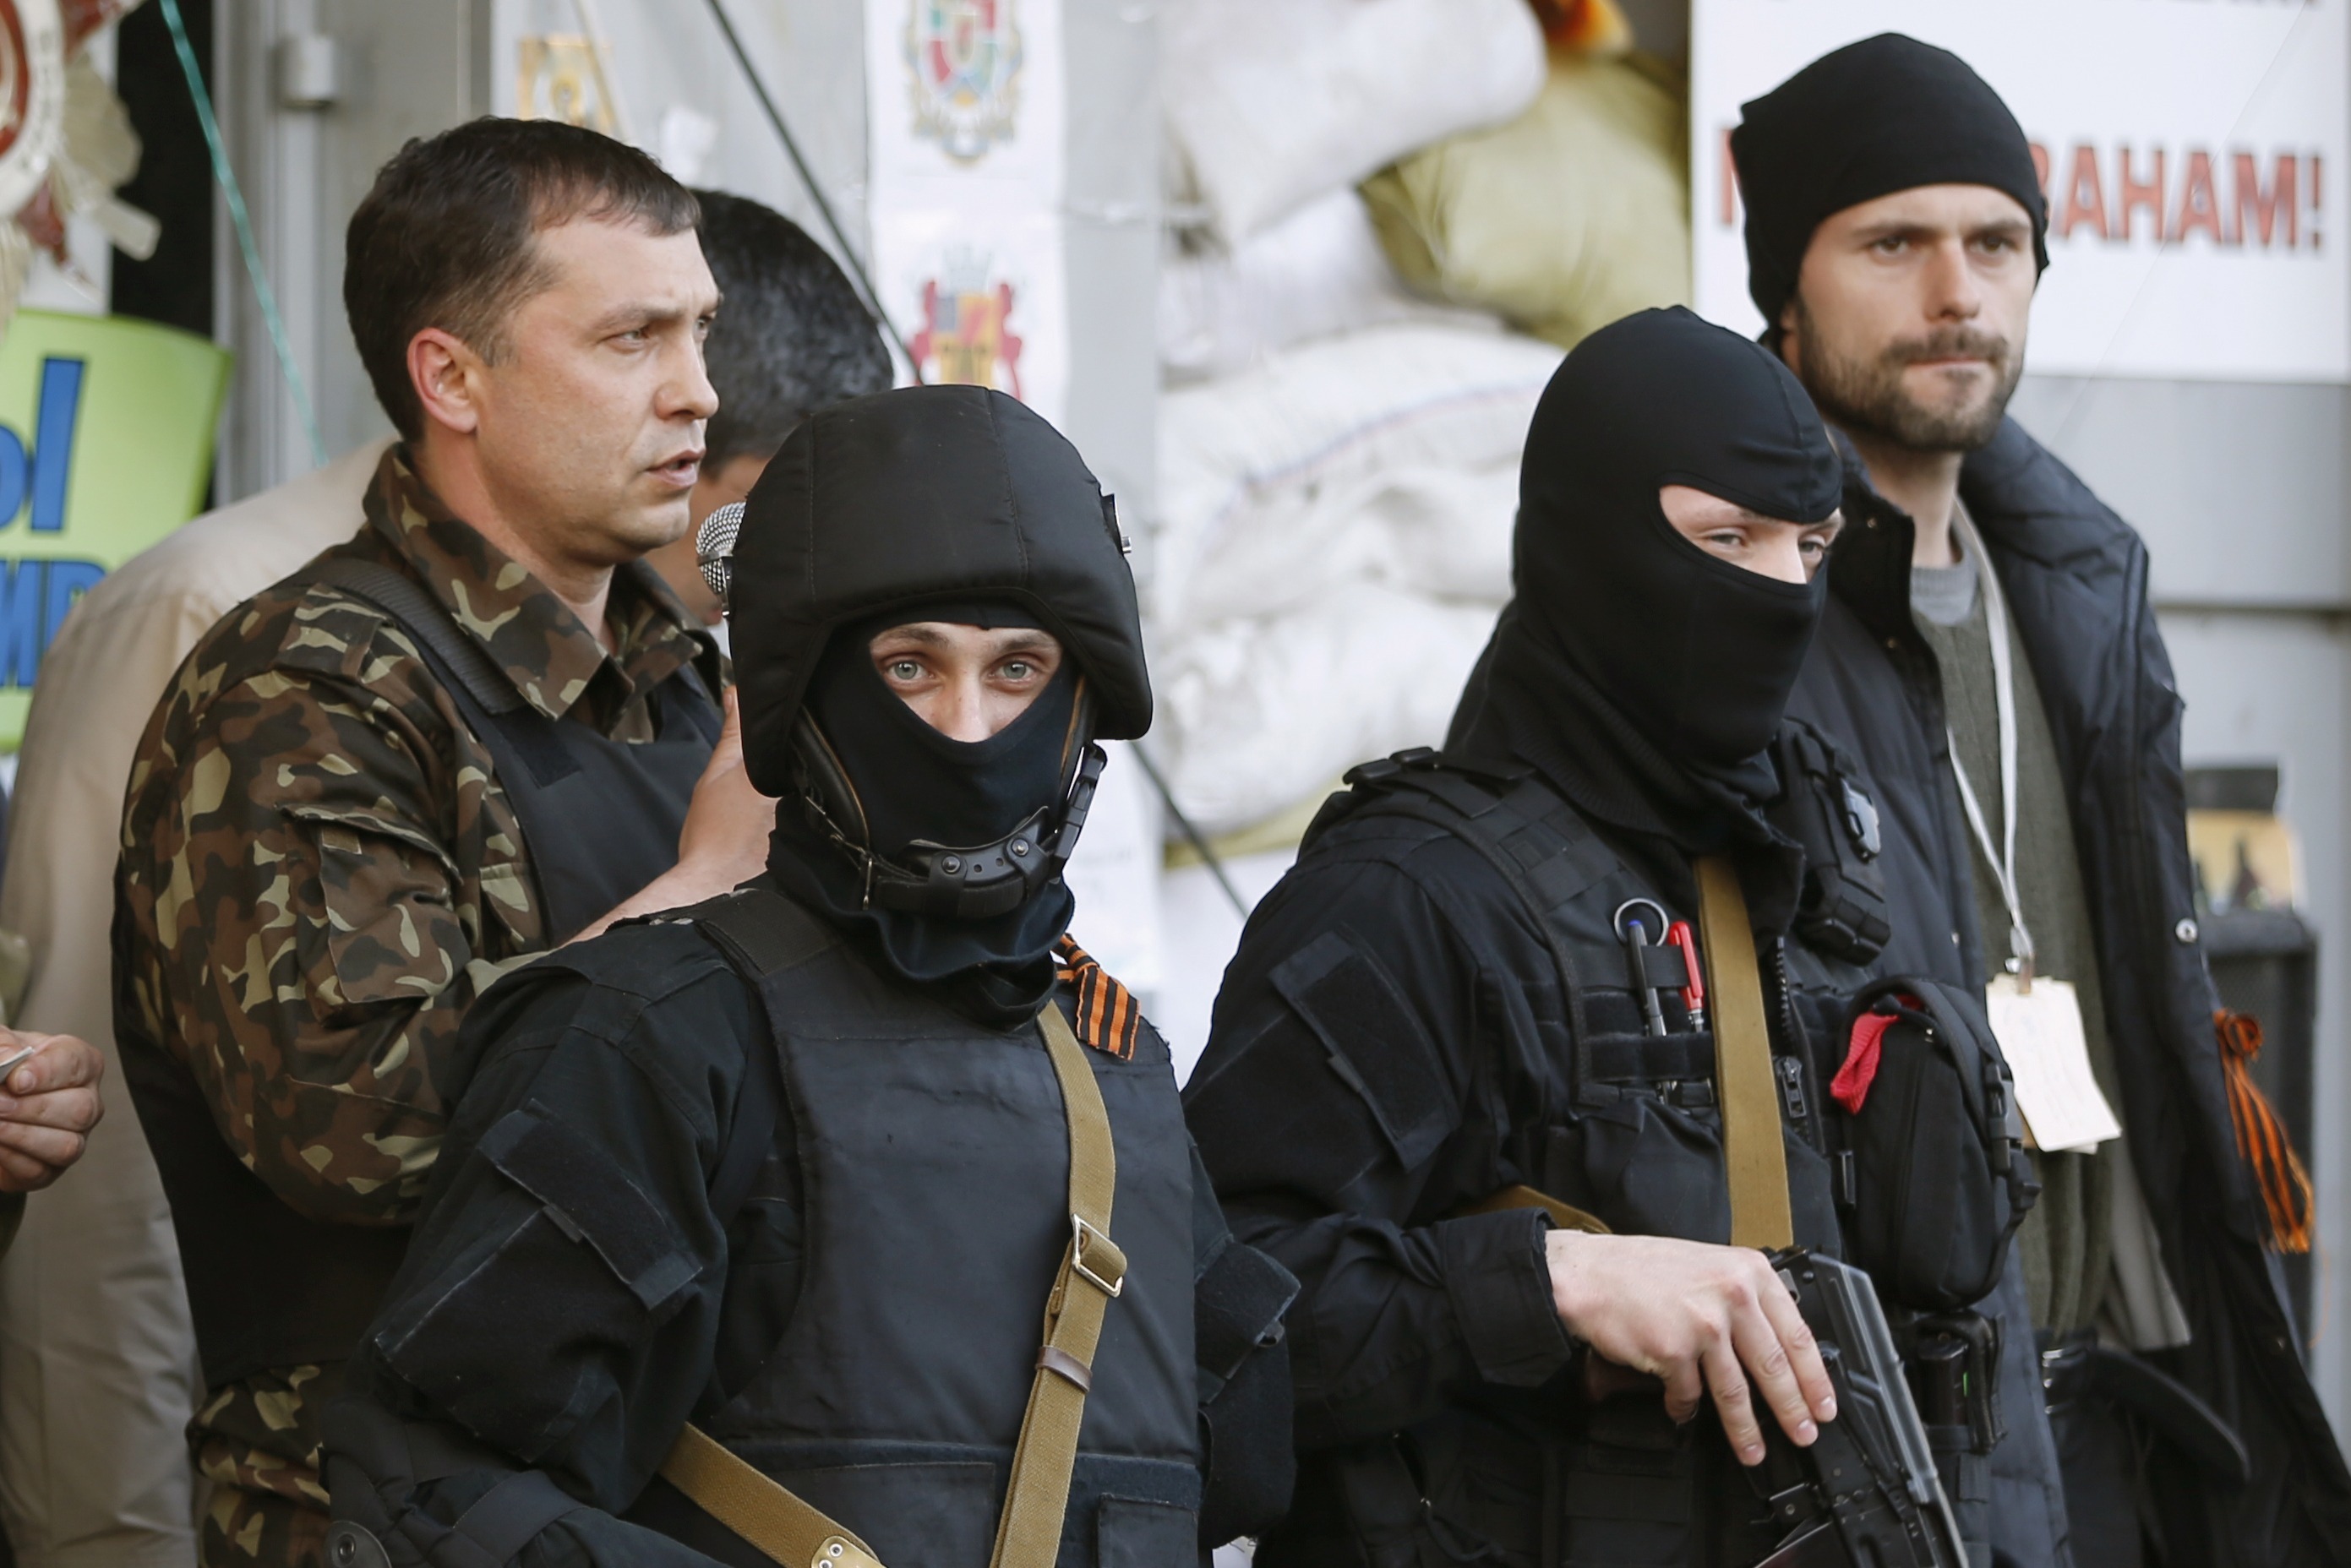 Θρίλερ στην Ουκρανία με την απαγωγή 7 παρατηρητών του ΟΑΣΕ